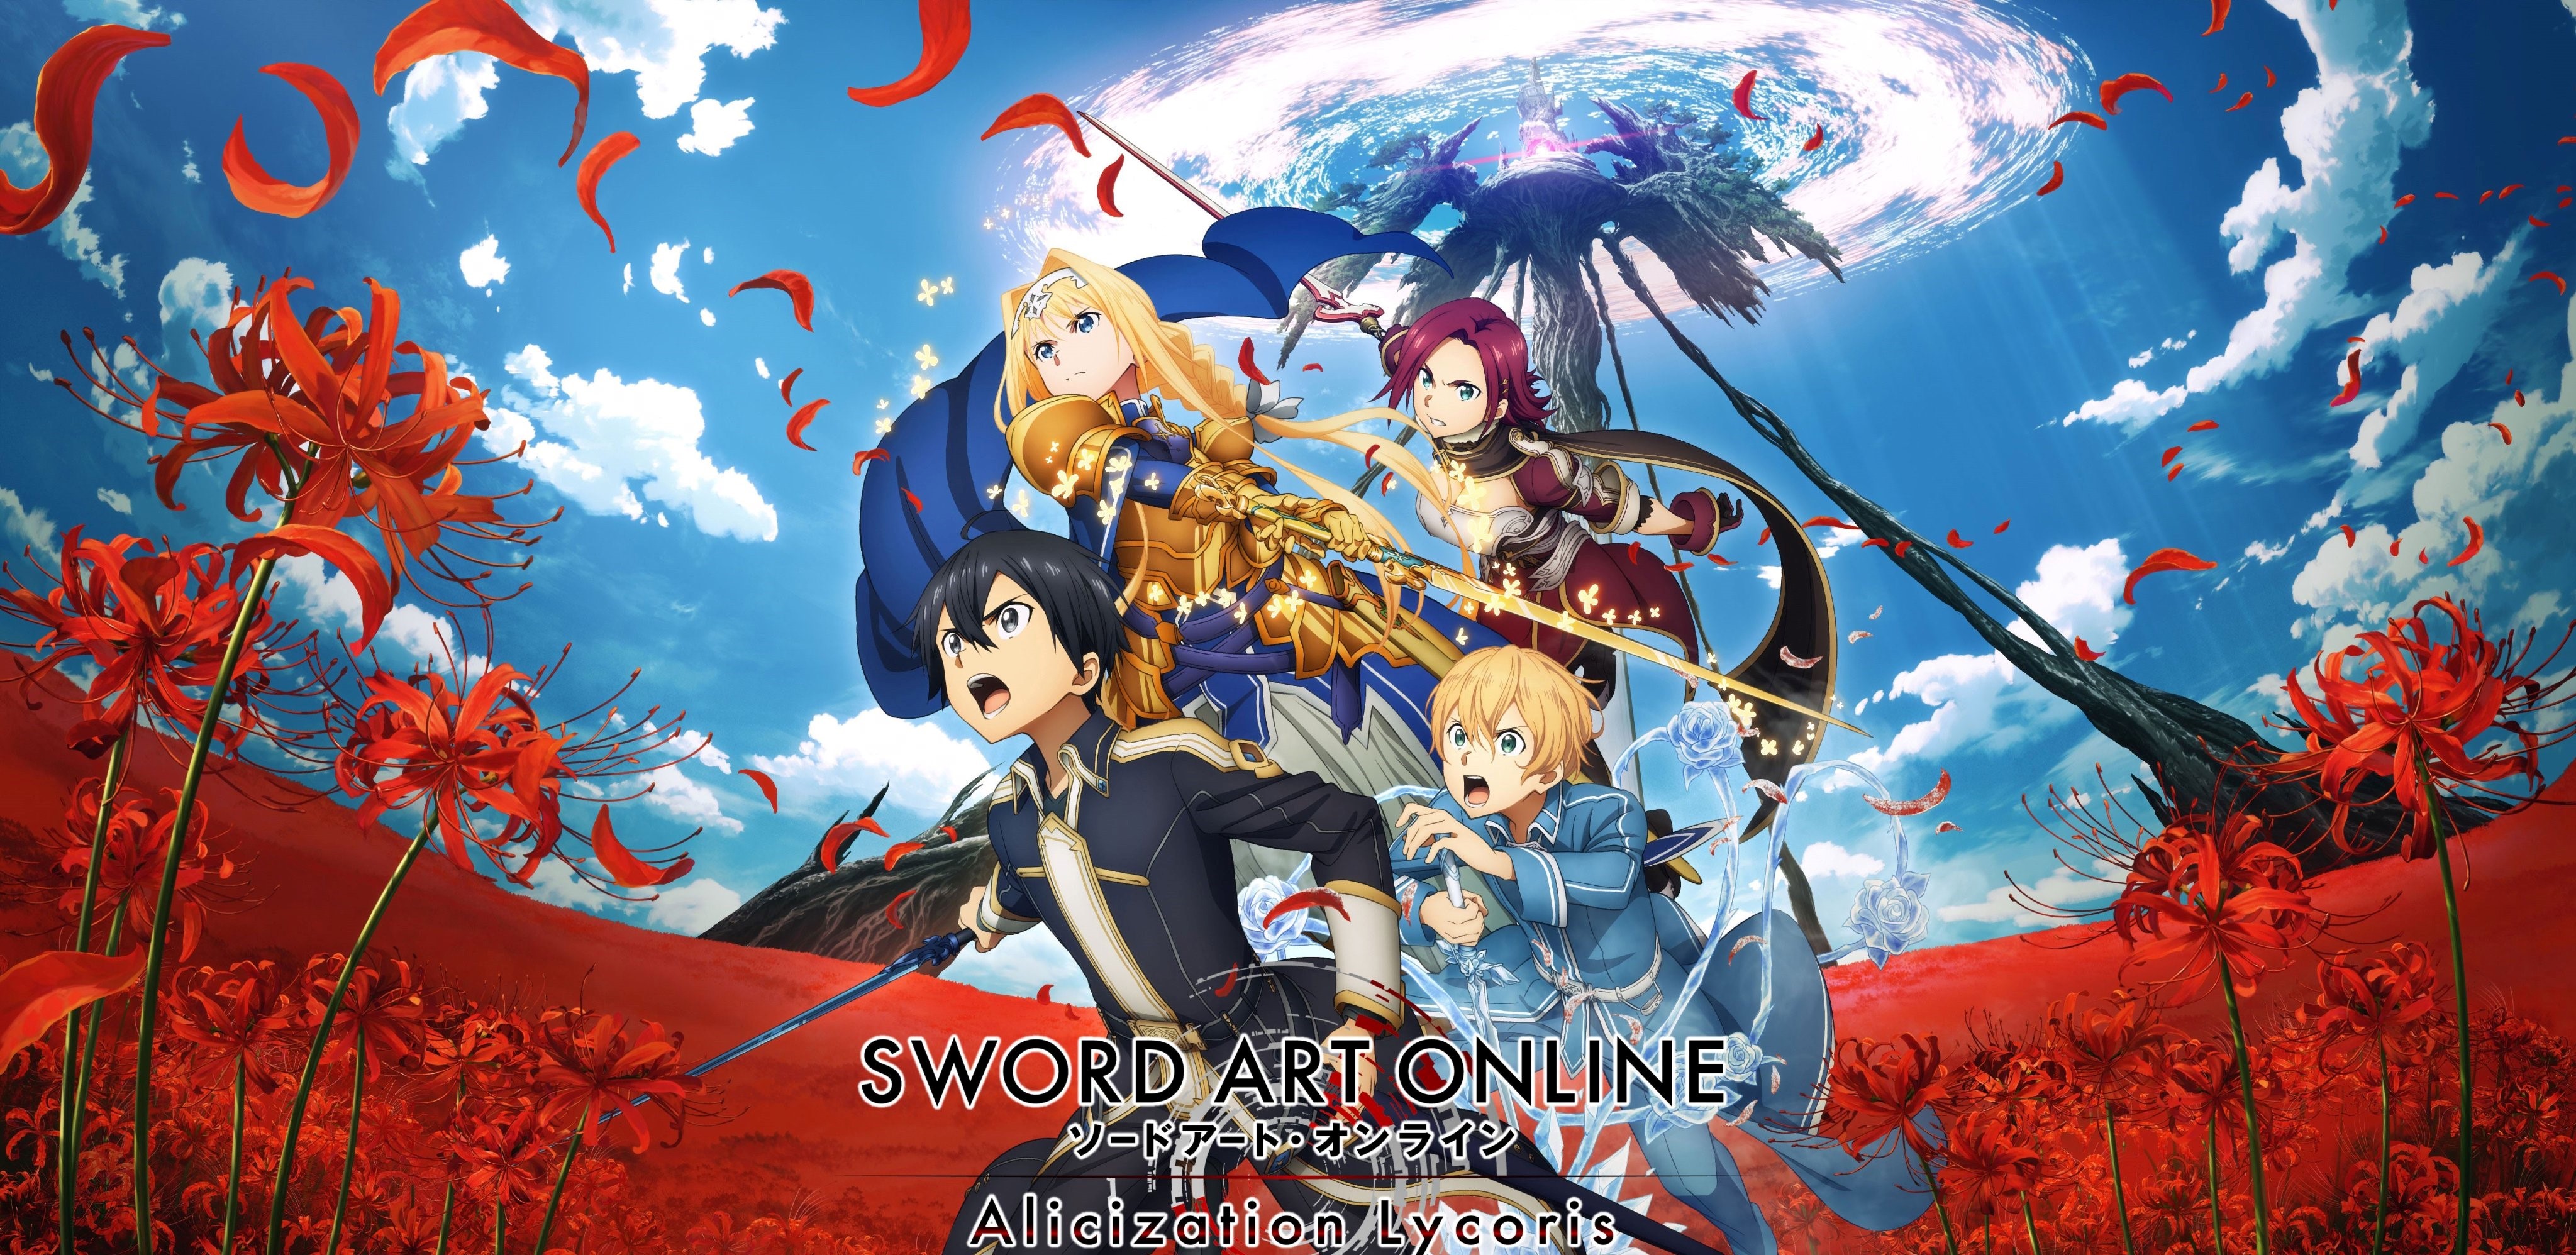 Sword Art Online: Alicization Wallpapers